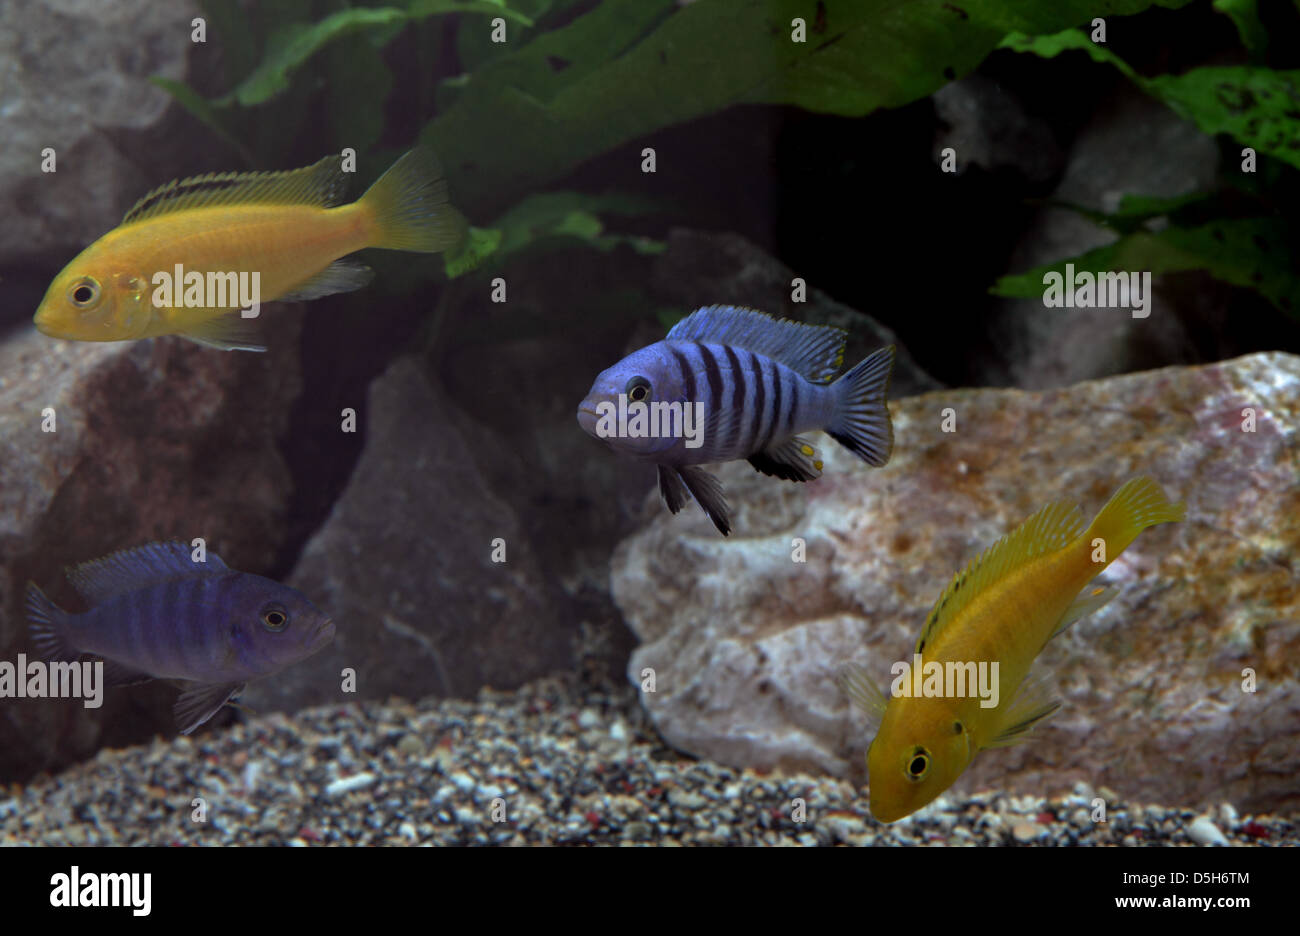 Mixed Cichlids in aquarium Stock Photo -